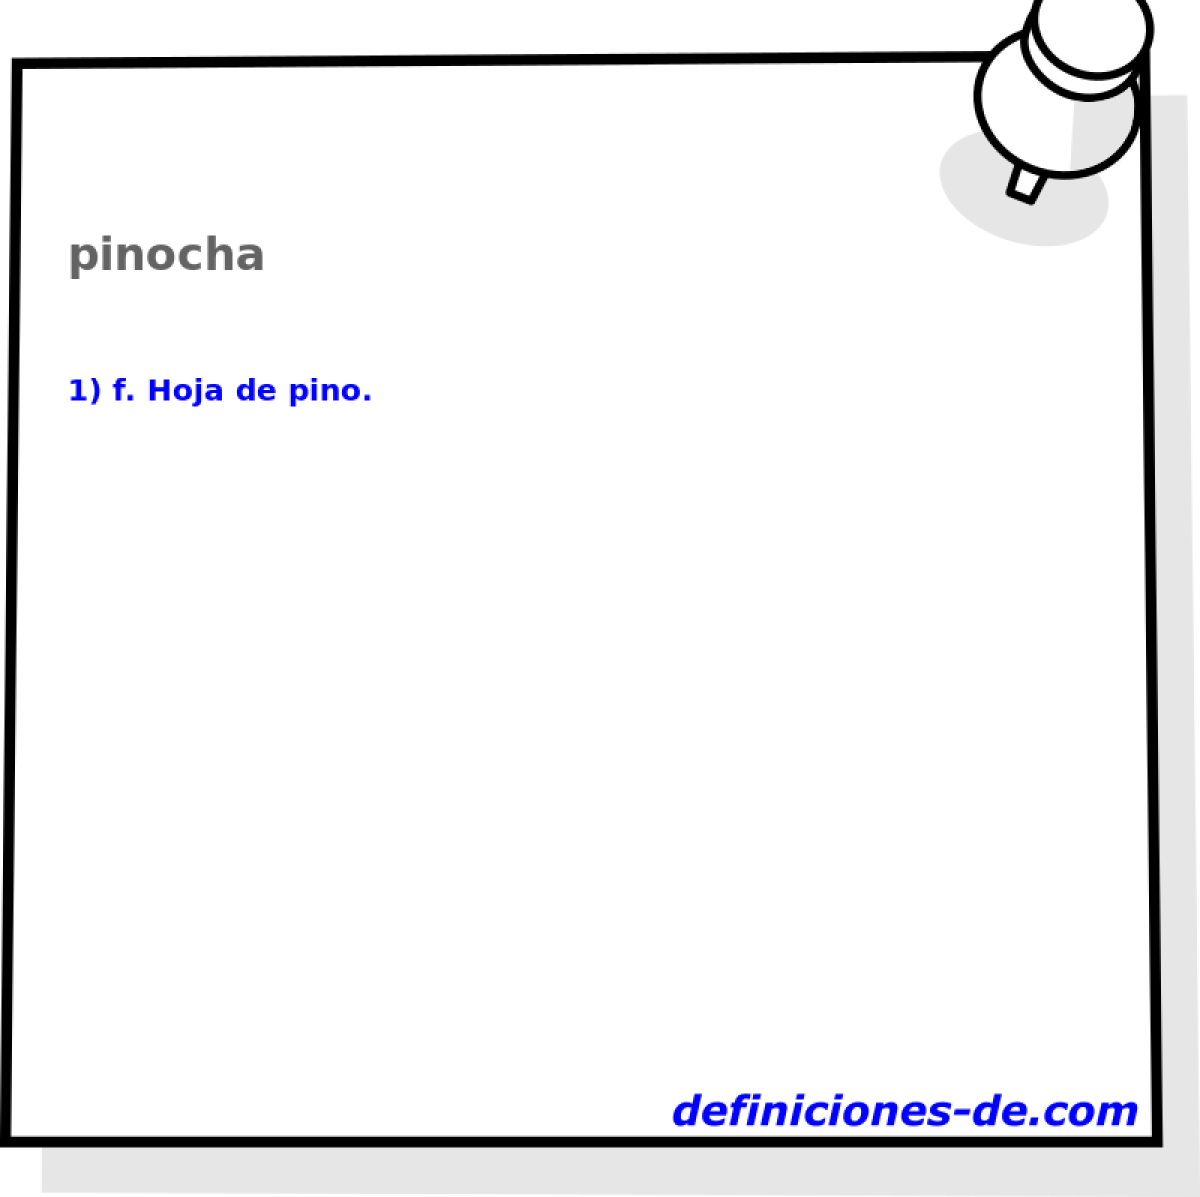 pinocha 